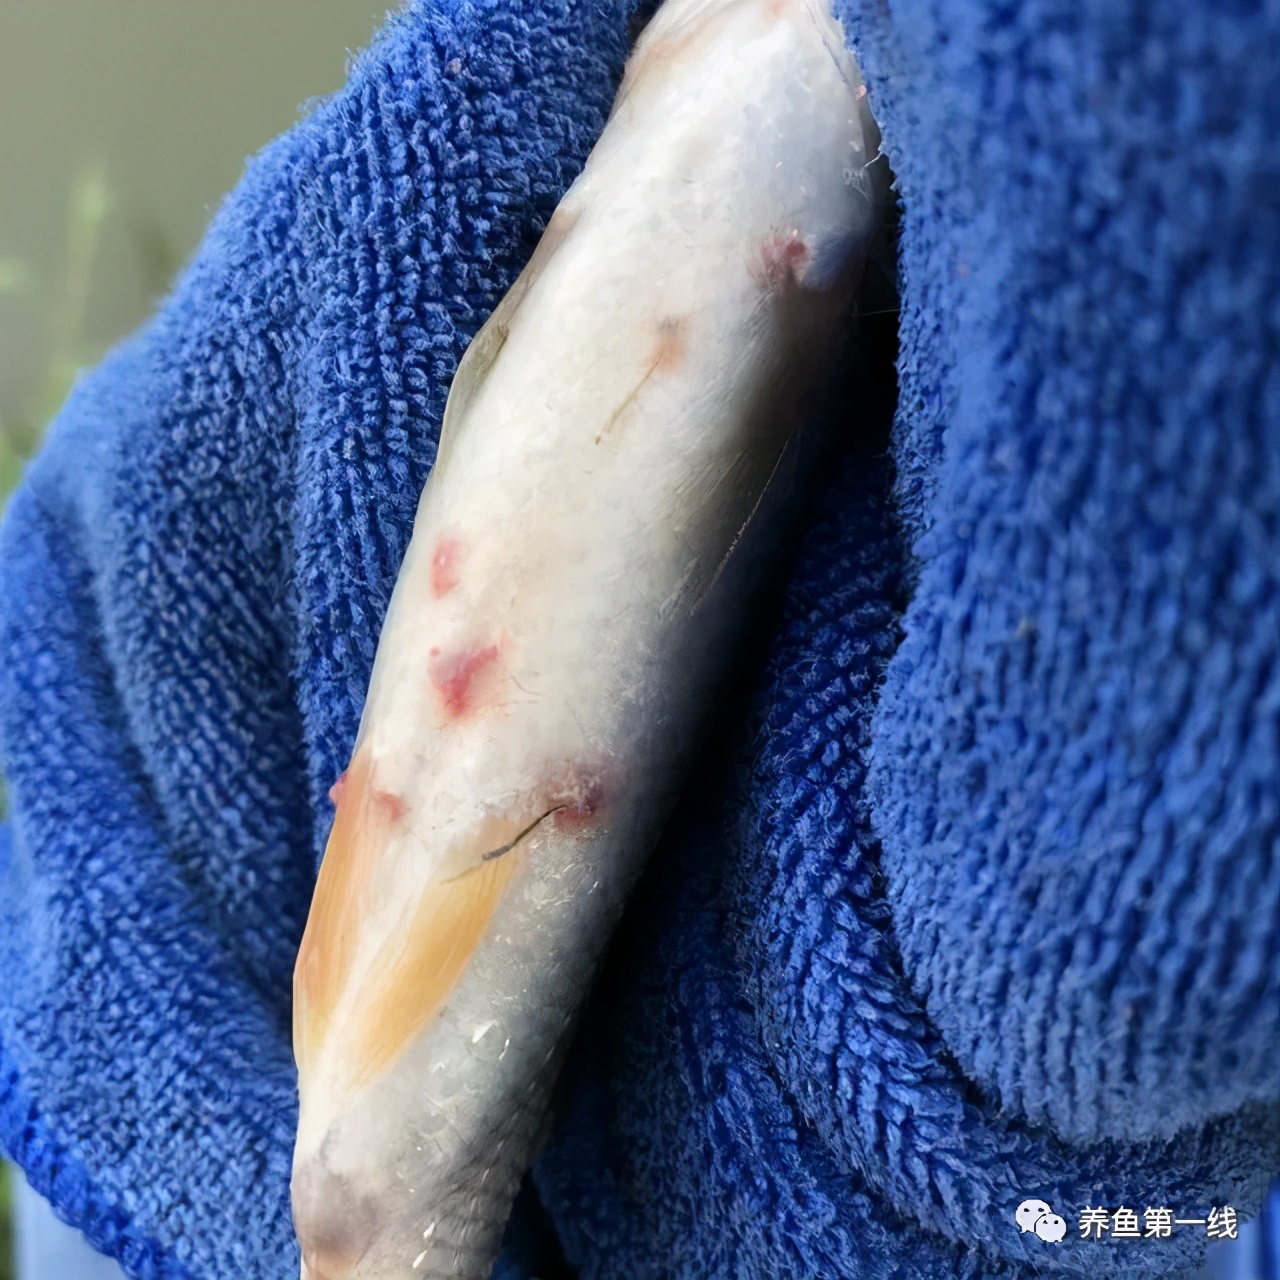 鱼身上有红斑或者虫体——这就是最顽固最难对付的鱼类锚头蚤病